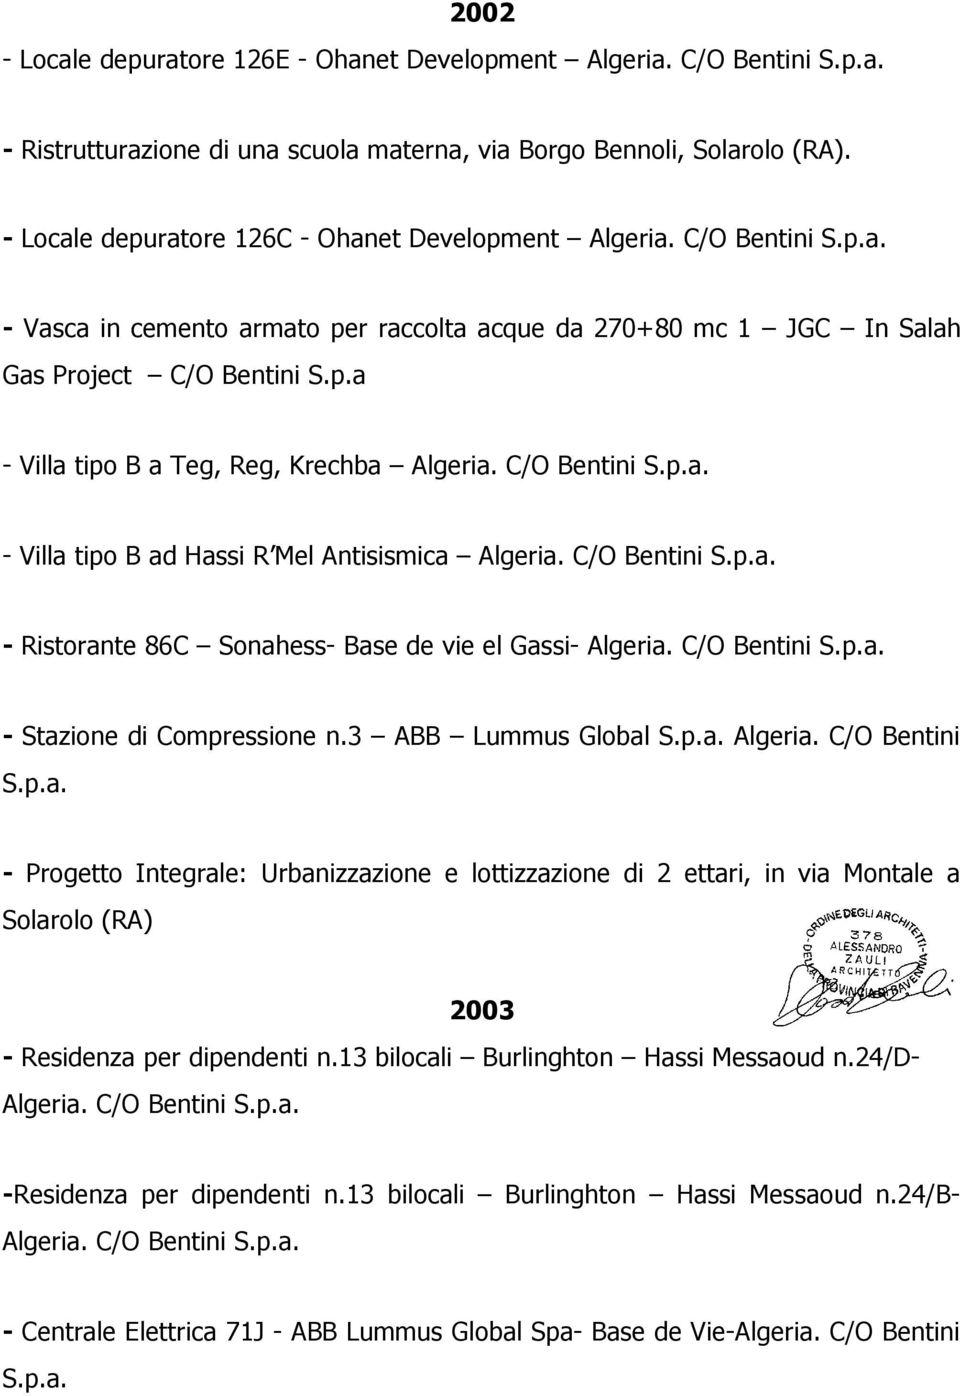 C/O Bentini S.p.a. Ristorante 86C Sonahess Base de vie el Gassi Algeria. C/O Bentini S.p.a. Stazione di Compressione n.3 ABB Lummus Global S.p.a. Algeria. C/O Bentini S.p.a. Progetto Integrale: Urbanizzazione e lottizzazione di 2 ettari, in via Montale a Solarolo (RA) 2003 Residenza per dipendenti n.